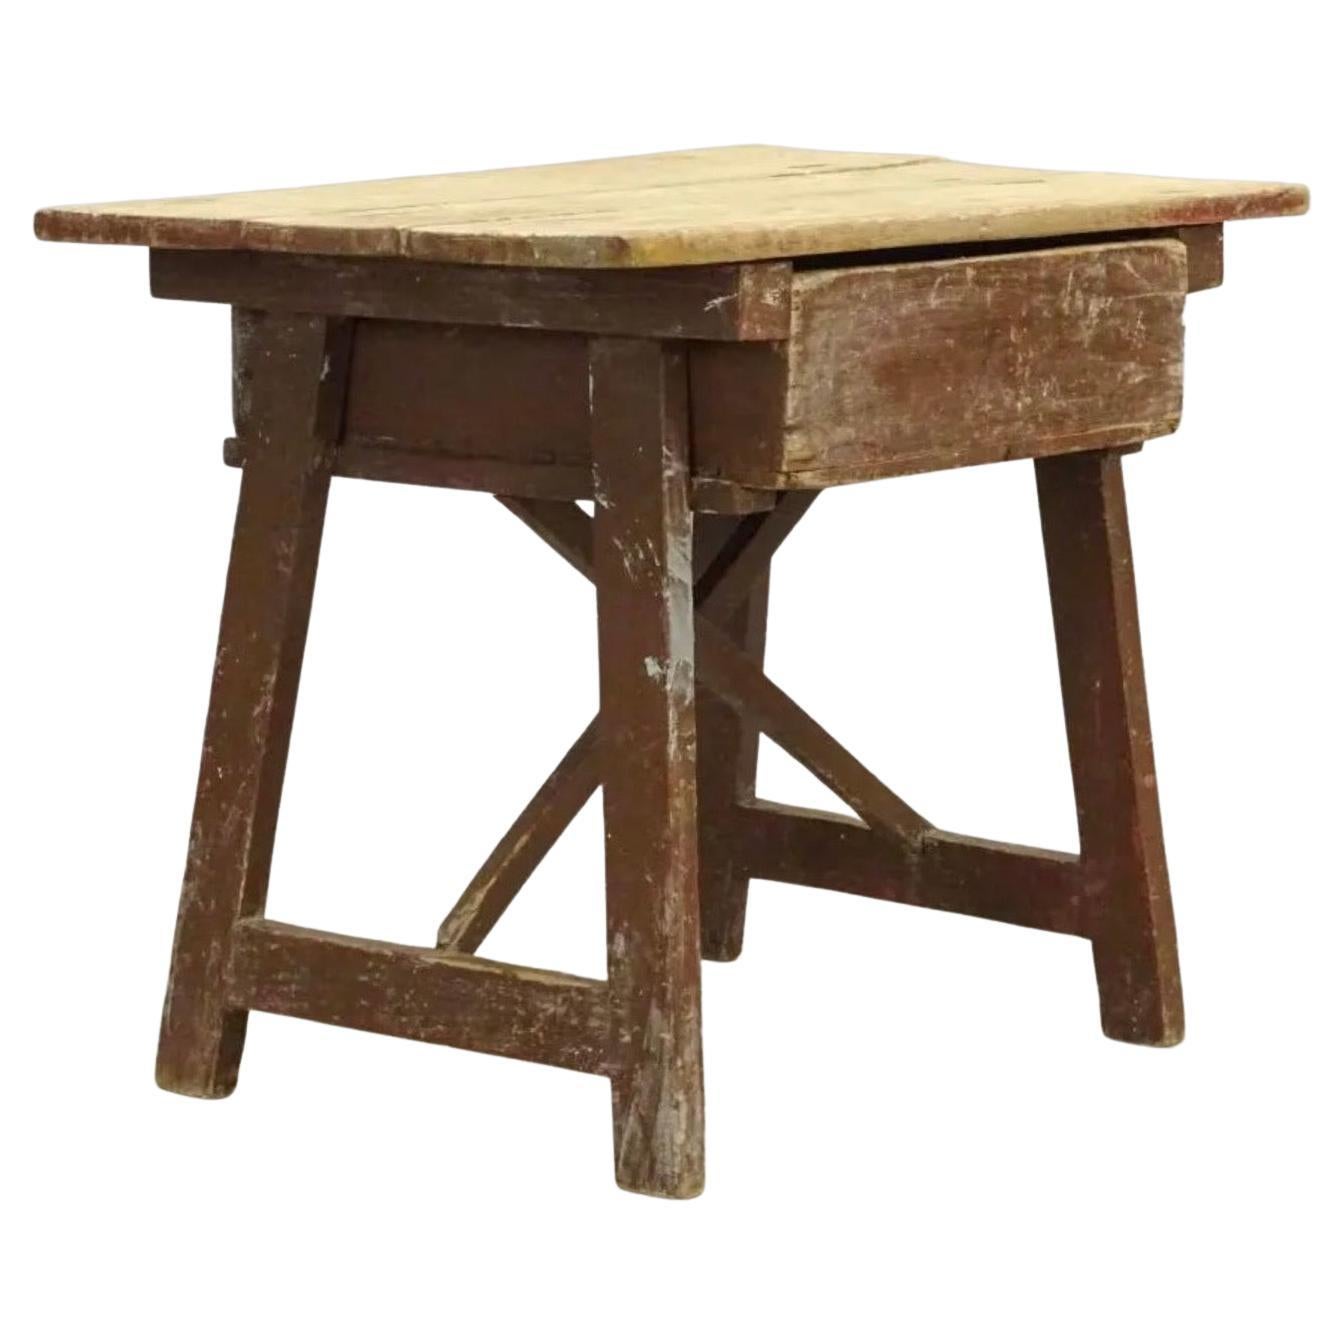 19. Jahrhundert niedriger rustikaler Beistell- oder Arbeitstisch mit einer Schublade. Der Tisch hat einen wunderbar gealterten Charakter. Er kann als Beistelltisch oder Couchtisch in einer rustikalen Einrichtung verwendet werden, aber auch als